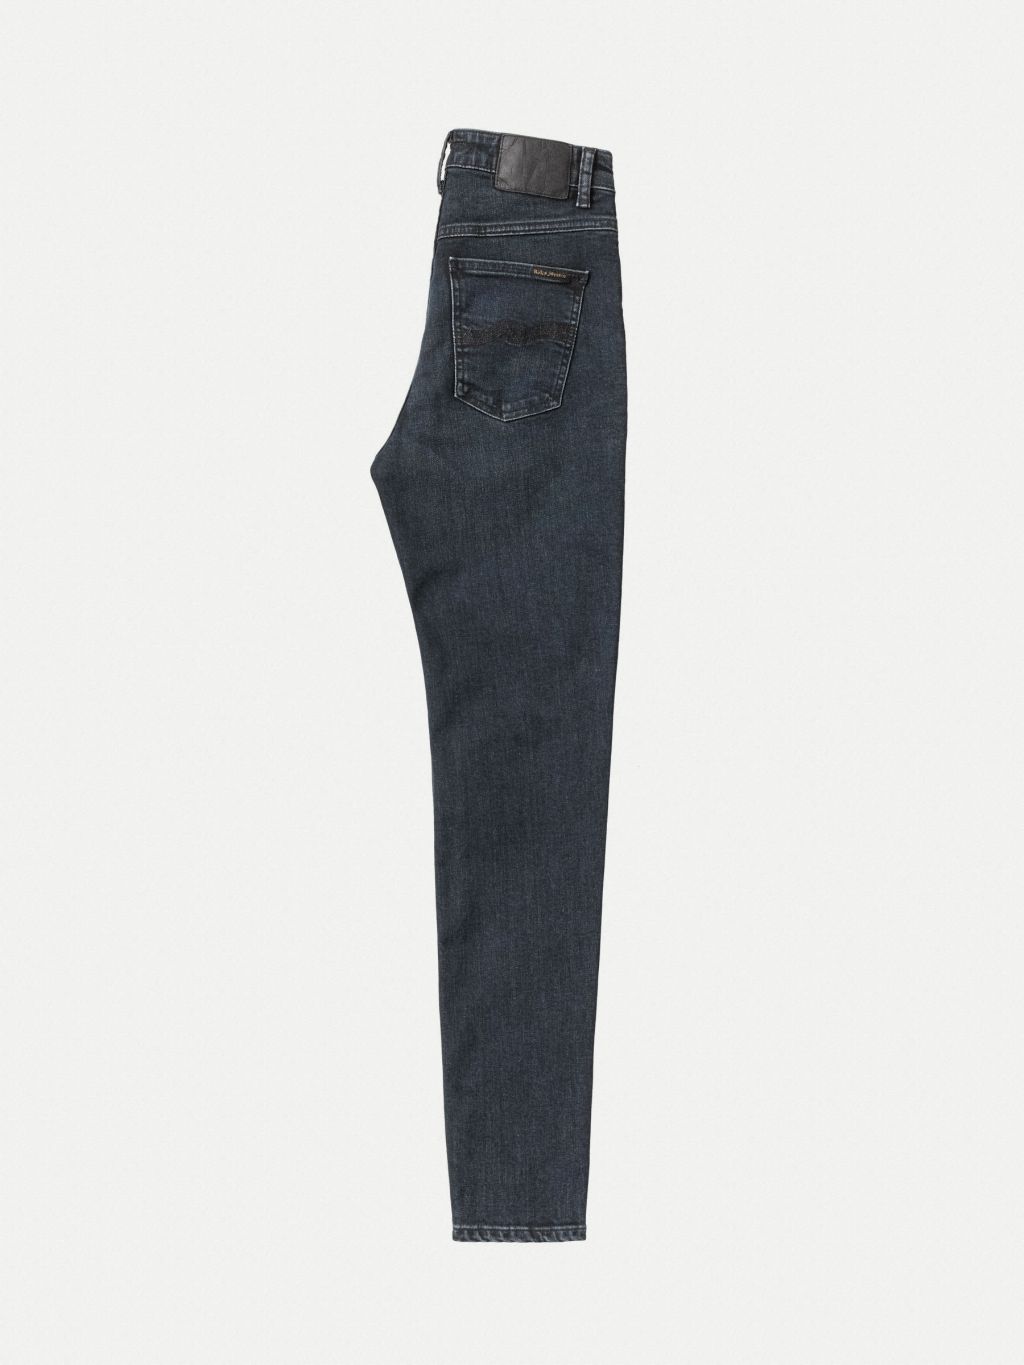 Hightop Tilde High Waist Jeans - Blue Quartz 26/28